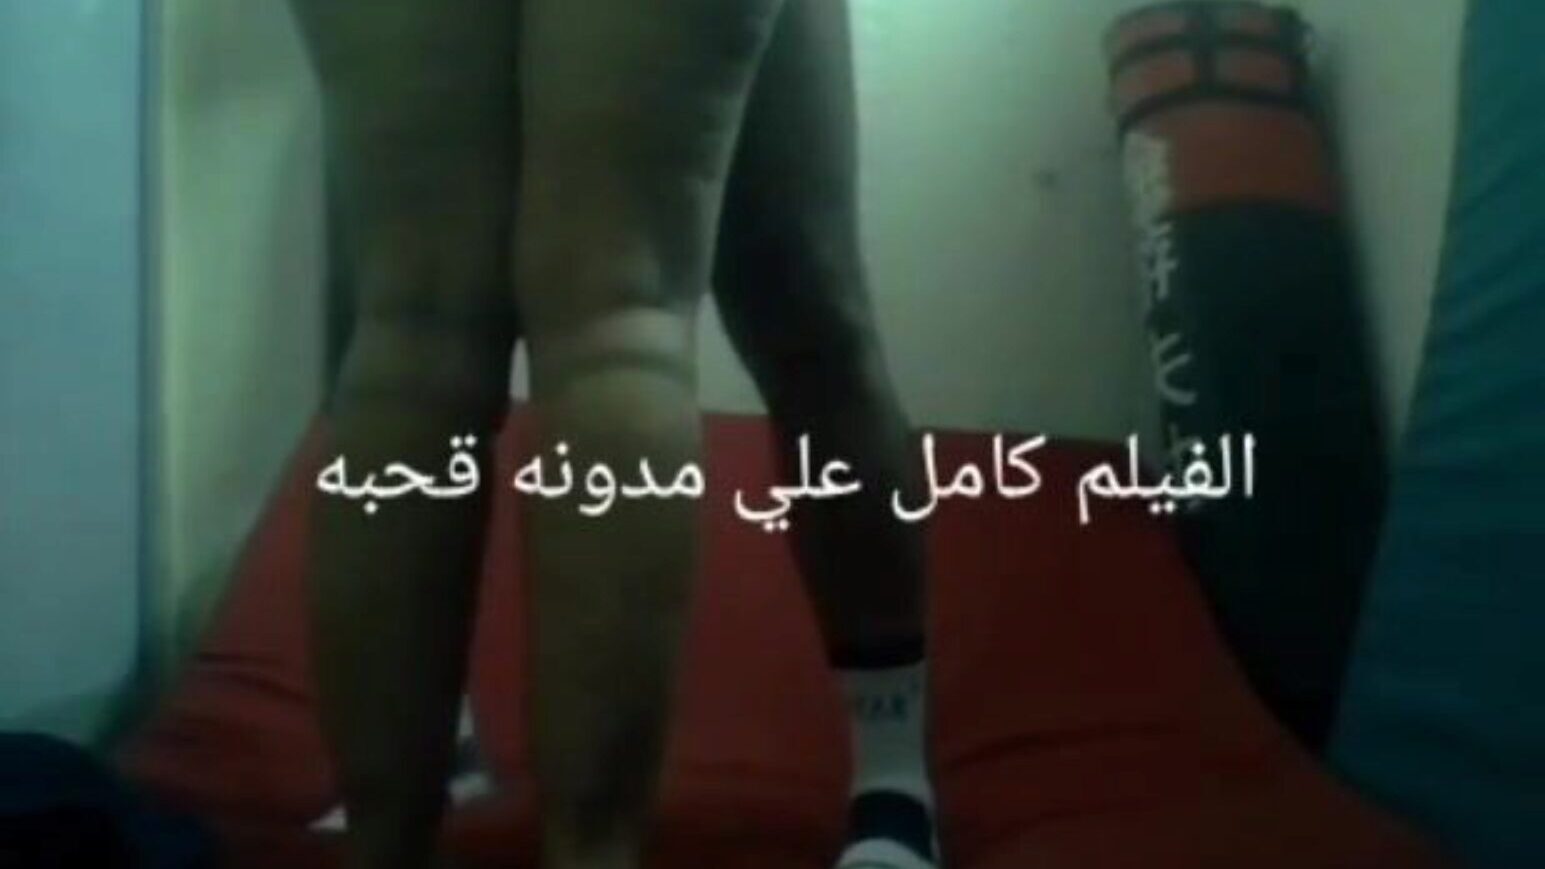 szex arab egyiptomi anteel el mahalla karate nagy segg nimfa